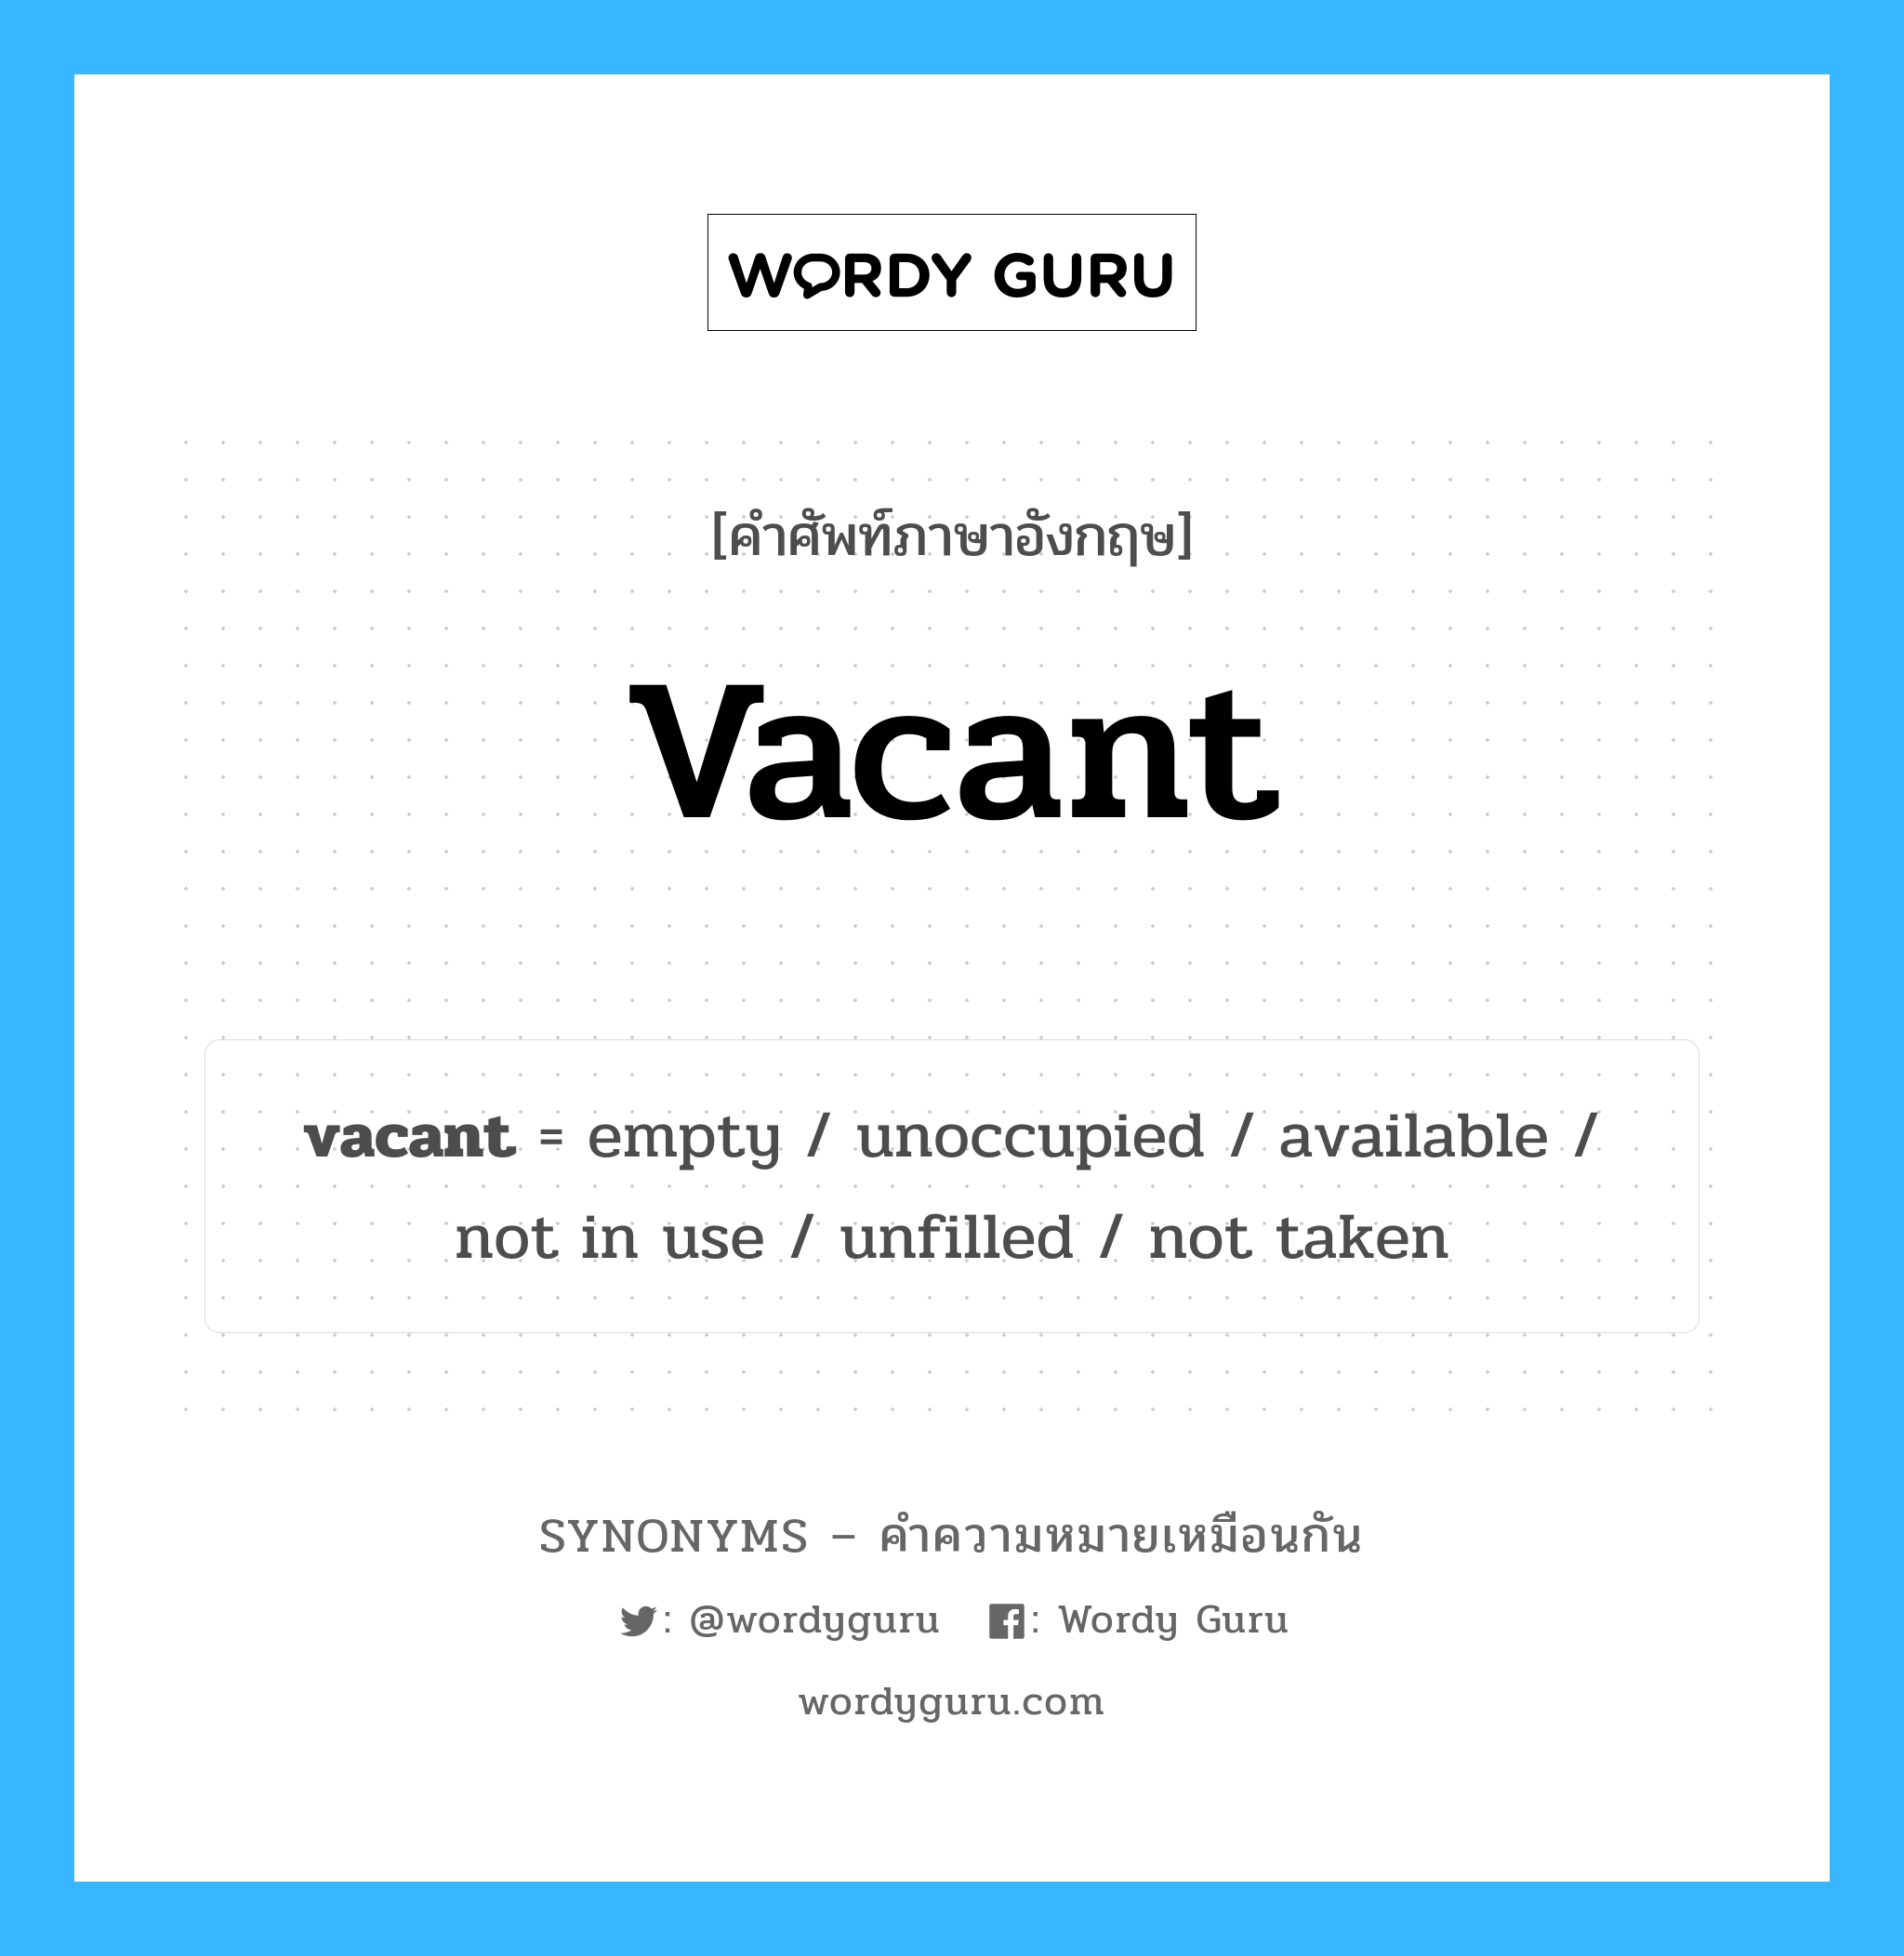 not in use เป็นหนึ่งใน vacant และมีคำอื่น ๆ อีกดังนี้, คำศัพท์ภาษาอังกฤษ not in use ความหมายคล้ายกันกับ vacant แปลว่า ไม่ได้ใช้ หมวด vacant